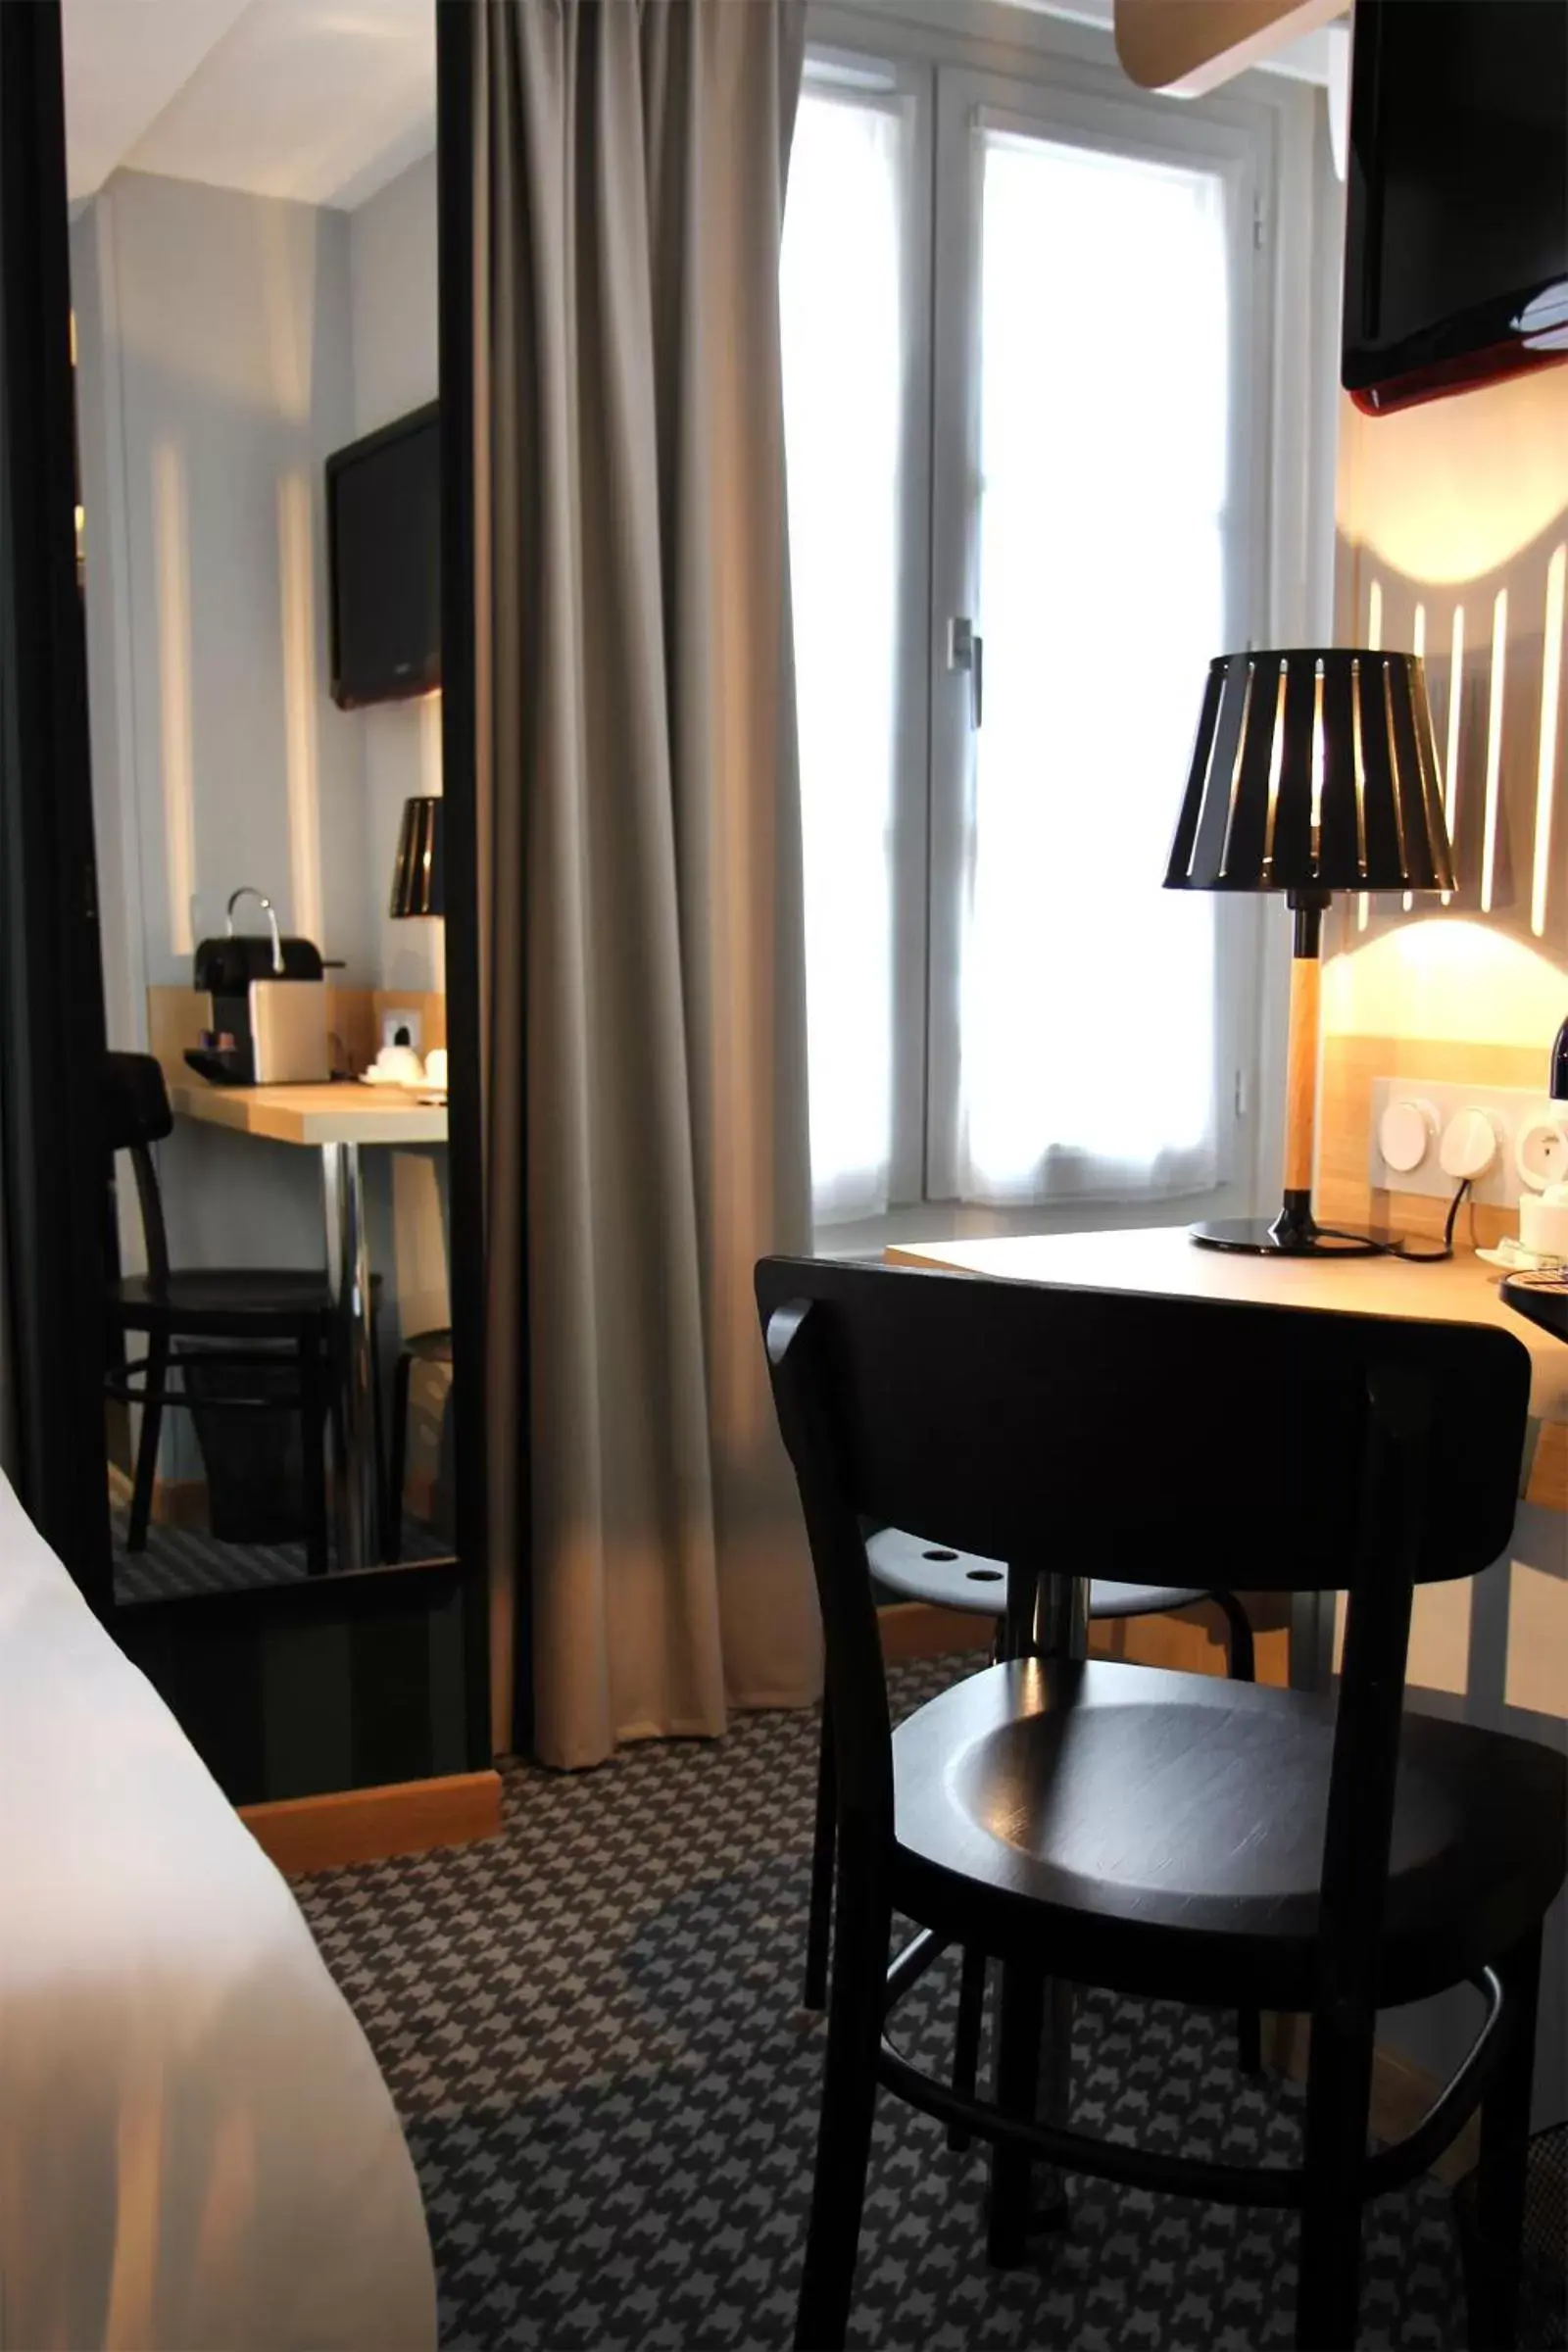 Bedroom, Dining Area in Best Western Hotel Opera Drouot